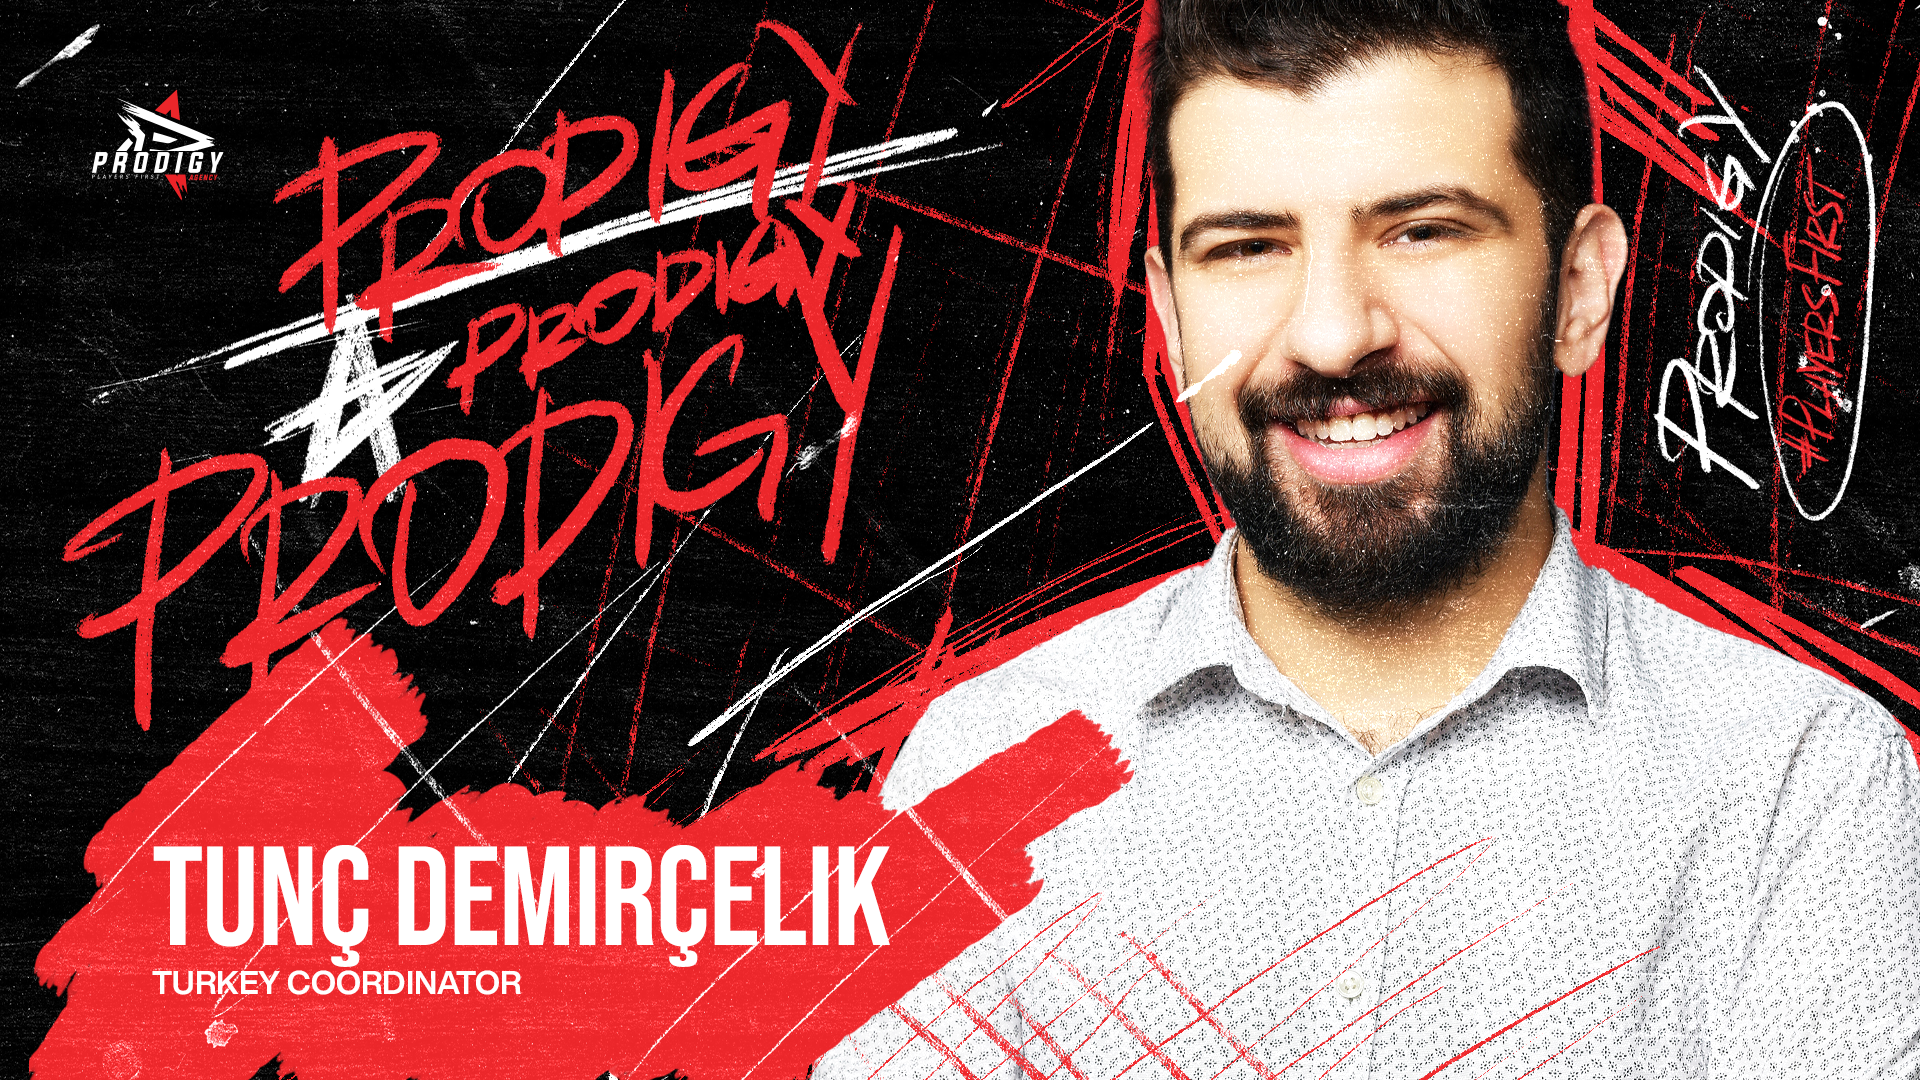 Tunç Demirçelik joins Prodigy Agency as Turkey Coordinator for Prodigy Agency